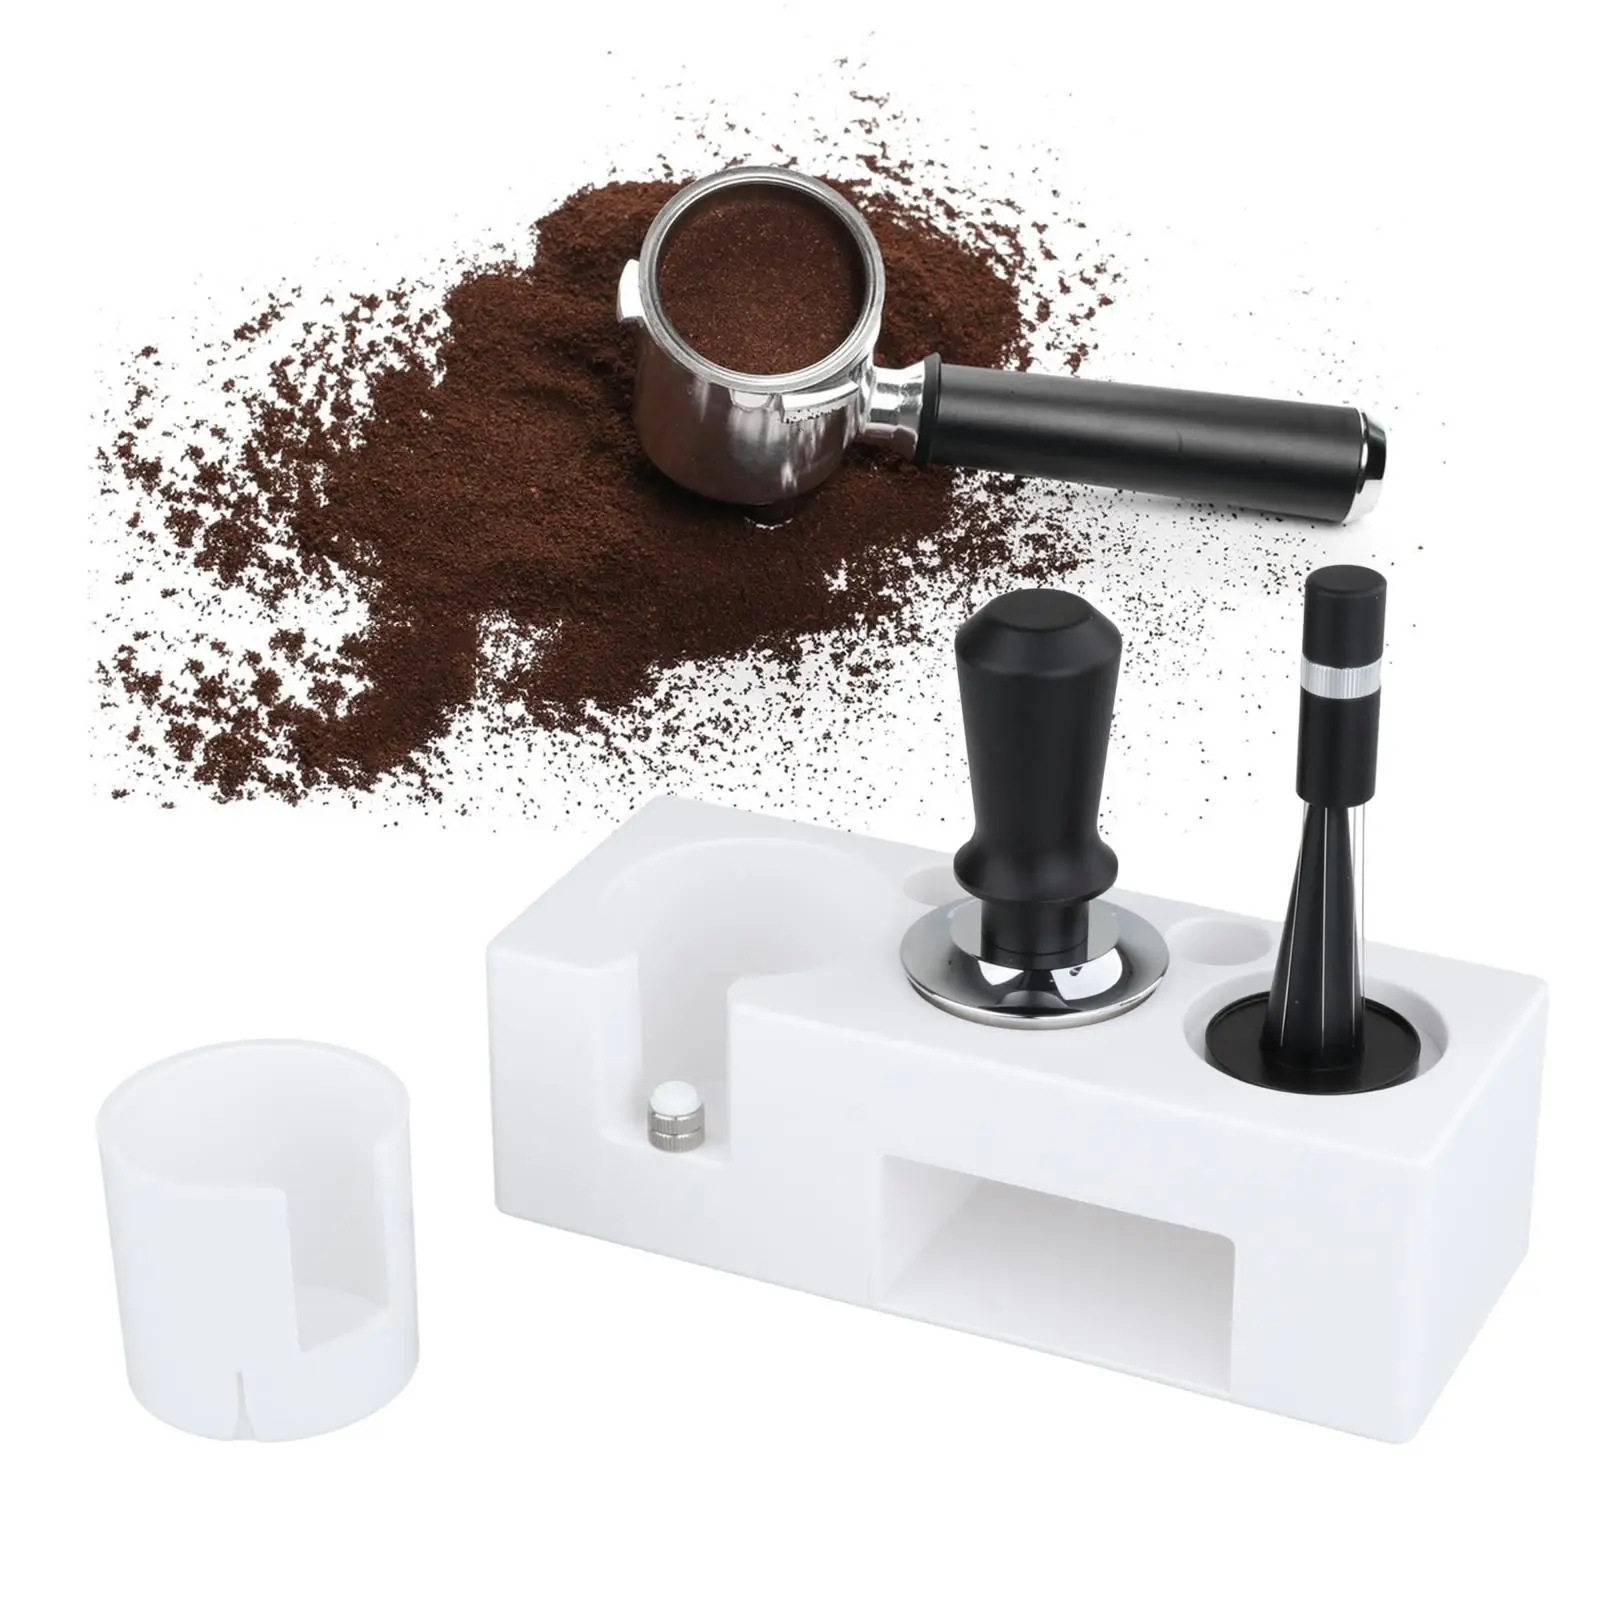 Espresso Tamper Mat Stand for Counters Espresso Machine Accessories Home